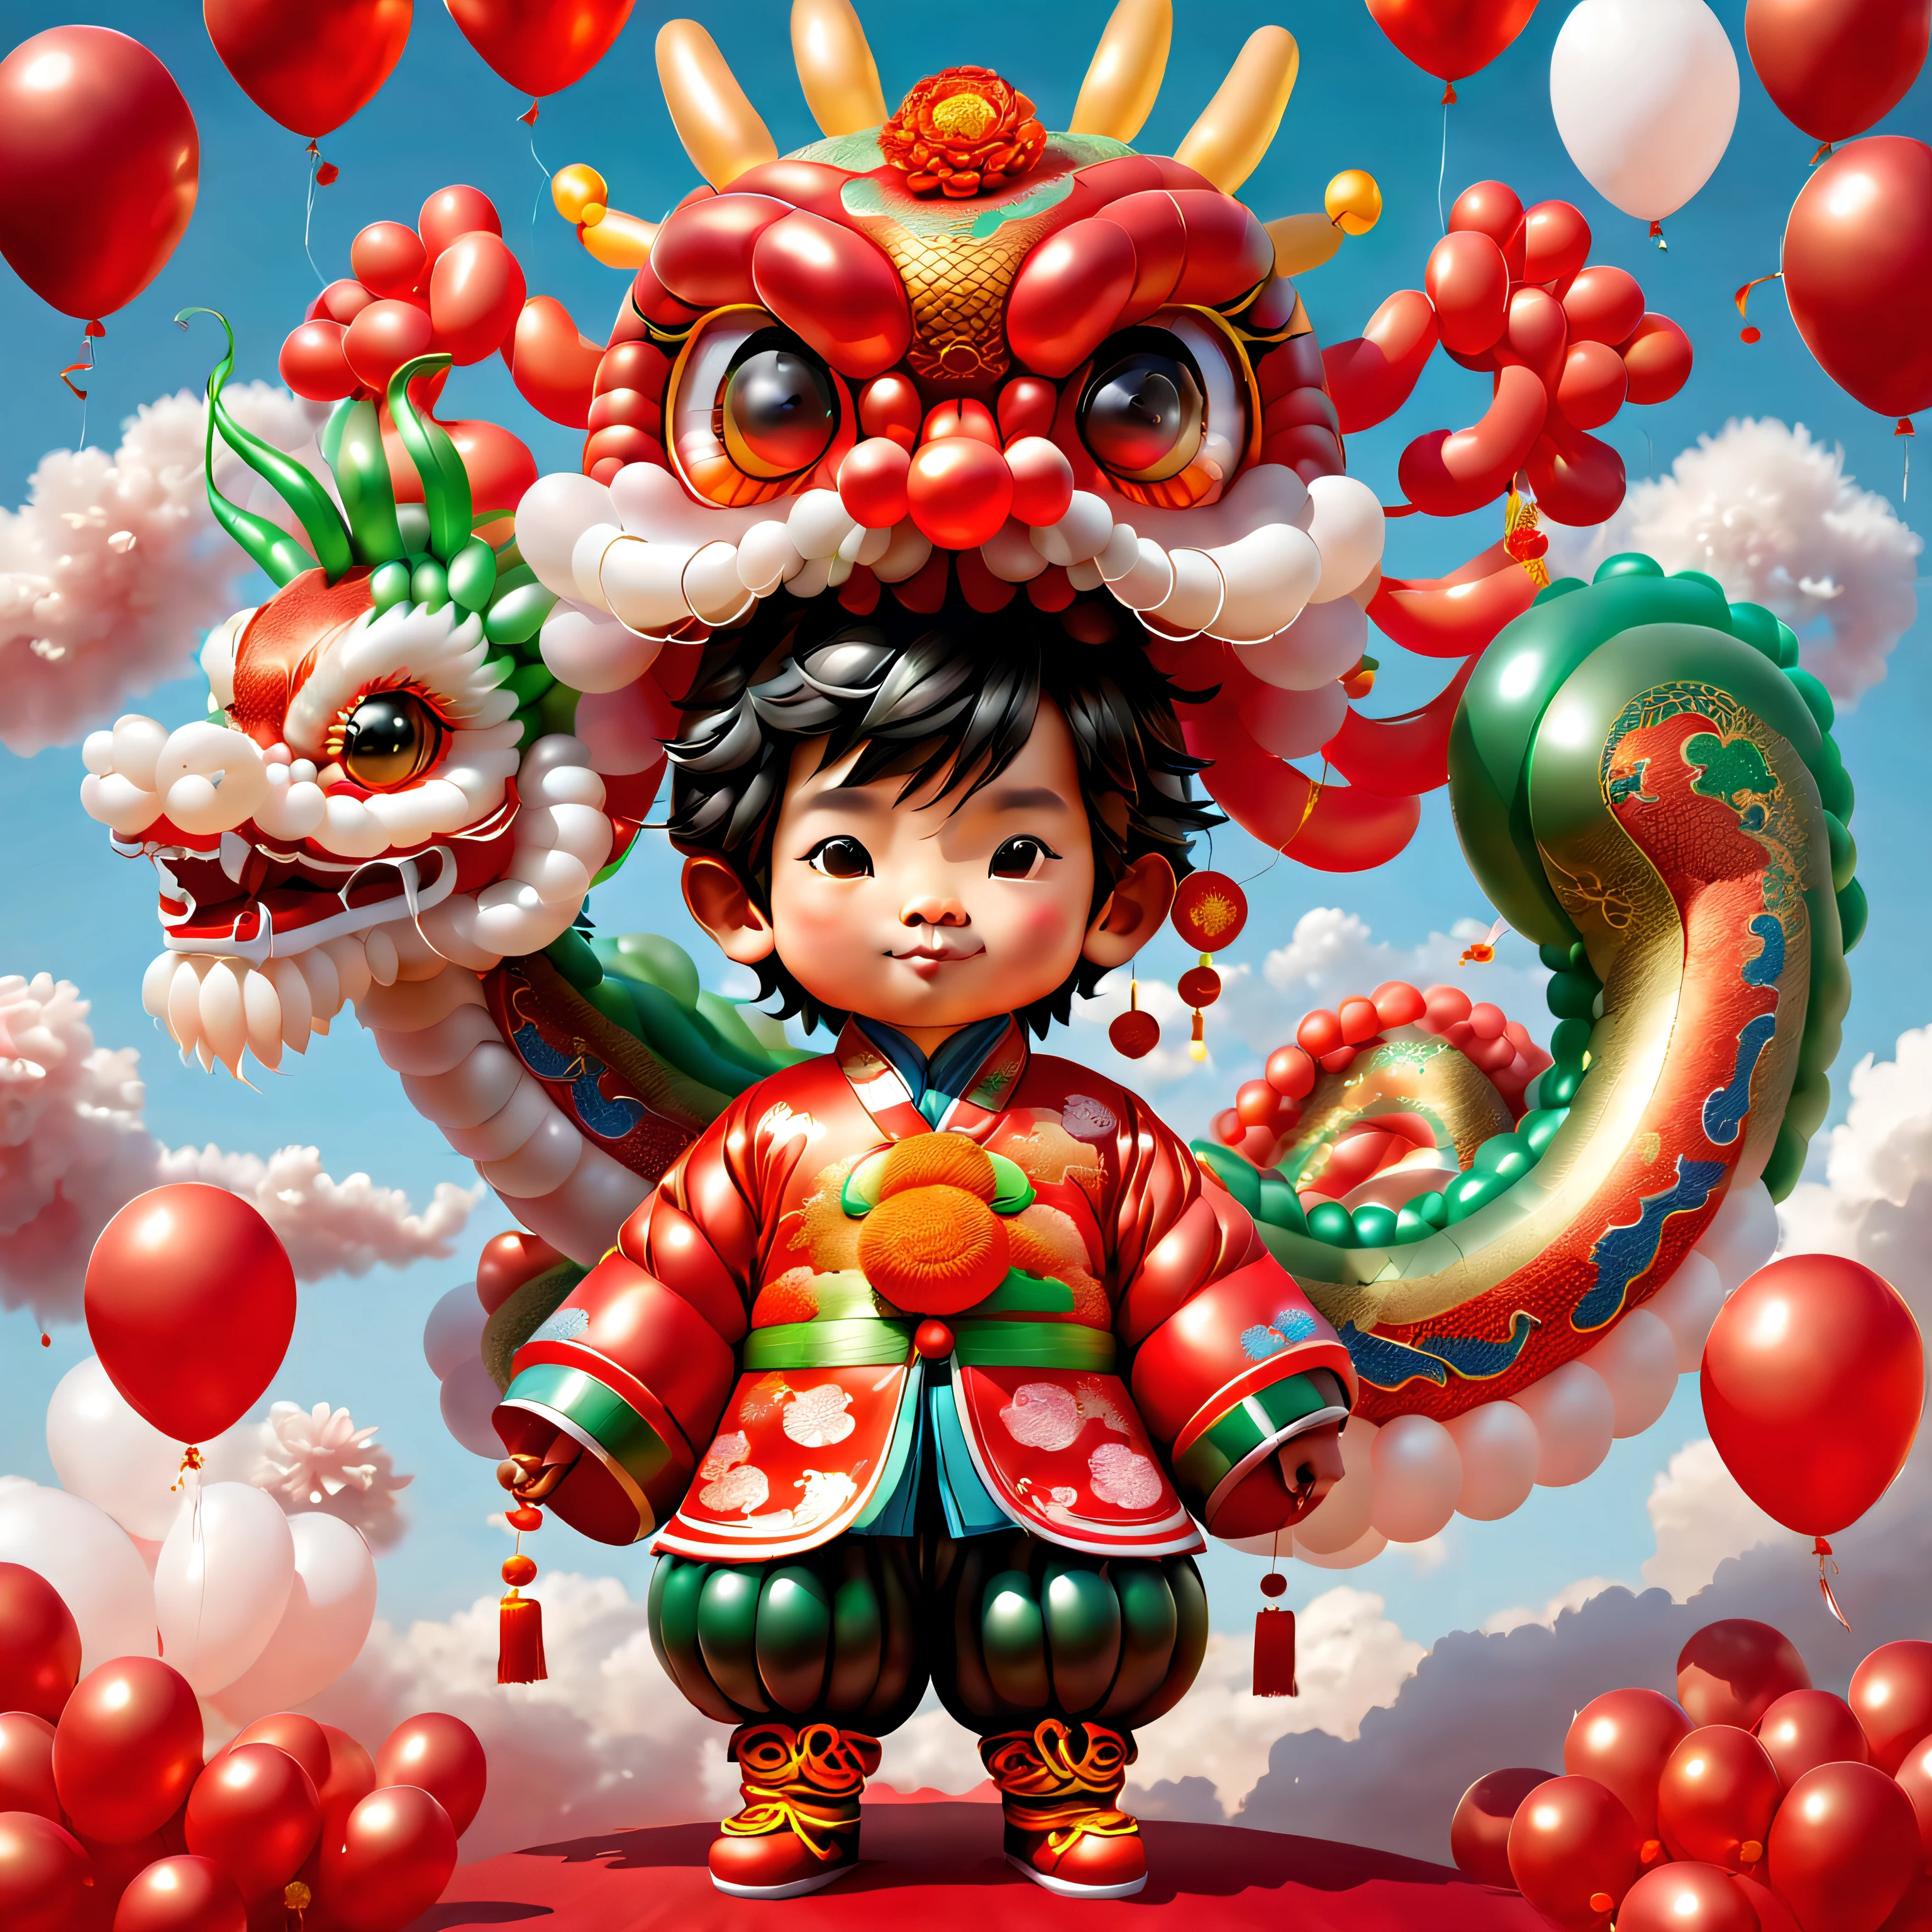 ((ลูกโป่งมังกรจีนน่ารักและรื่นเริง 1 อันและเด็กชายบอลลูน, สวมชุดจีนโบราณที่ทำจากลูกโป่ง, ue5, ประทัด, เมฆมงคล, พื้นหลังสีแดง)), ศิลปะดิจิตอลที่น่ารักและมีรายละเอียด, ภาพวาดดิจิตอลที่น่ารัก, เพนกวินบอลลูนน่ารัก, งานศิลปะที่มีรายละเอียดน่ารัก, ((ภาพประกอบของเวกเตอร์ที่น่ารัก)), การวาดภาพดิจิตอลที่มีรายละเอียดมาก, น่ารักและมีสีสัน, หน้าอกใหญ่น่ารัก, งานศิลปะดิจิทัลที่มีรายละเอียดสูง, รายละเอียดมากมาย、มีสีมากมายเหลือเฟือ